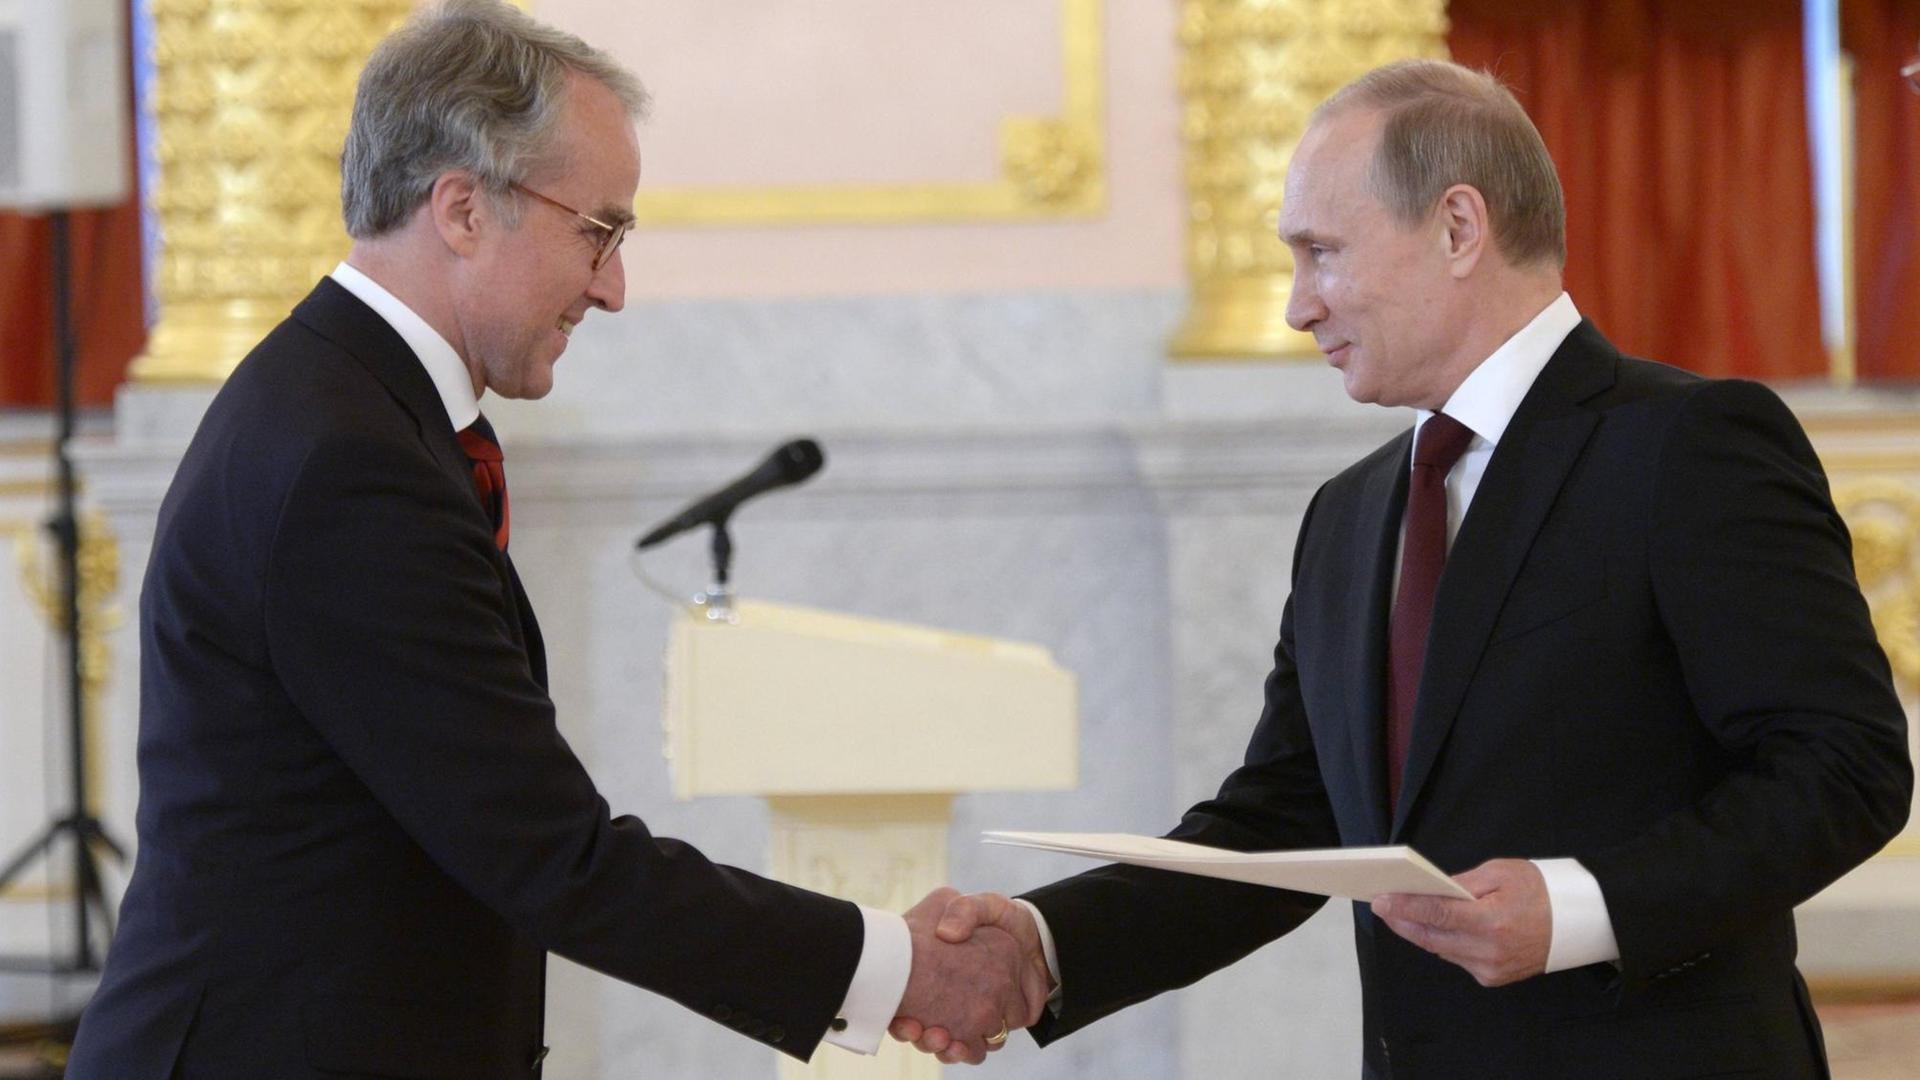 Rüdiger von Fritsch deutscher Botschafter in Moskau, gibt dem russischen Präsidenten Wladimir Putin die Hand